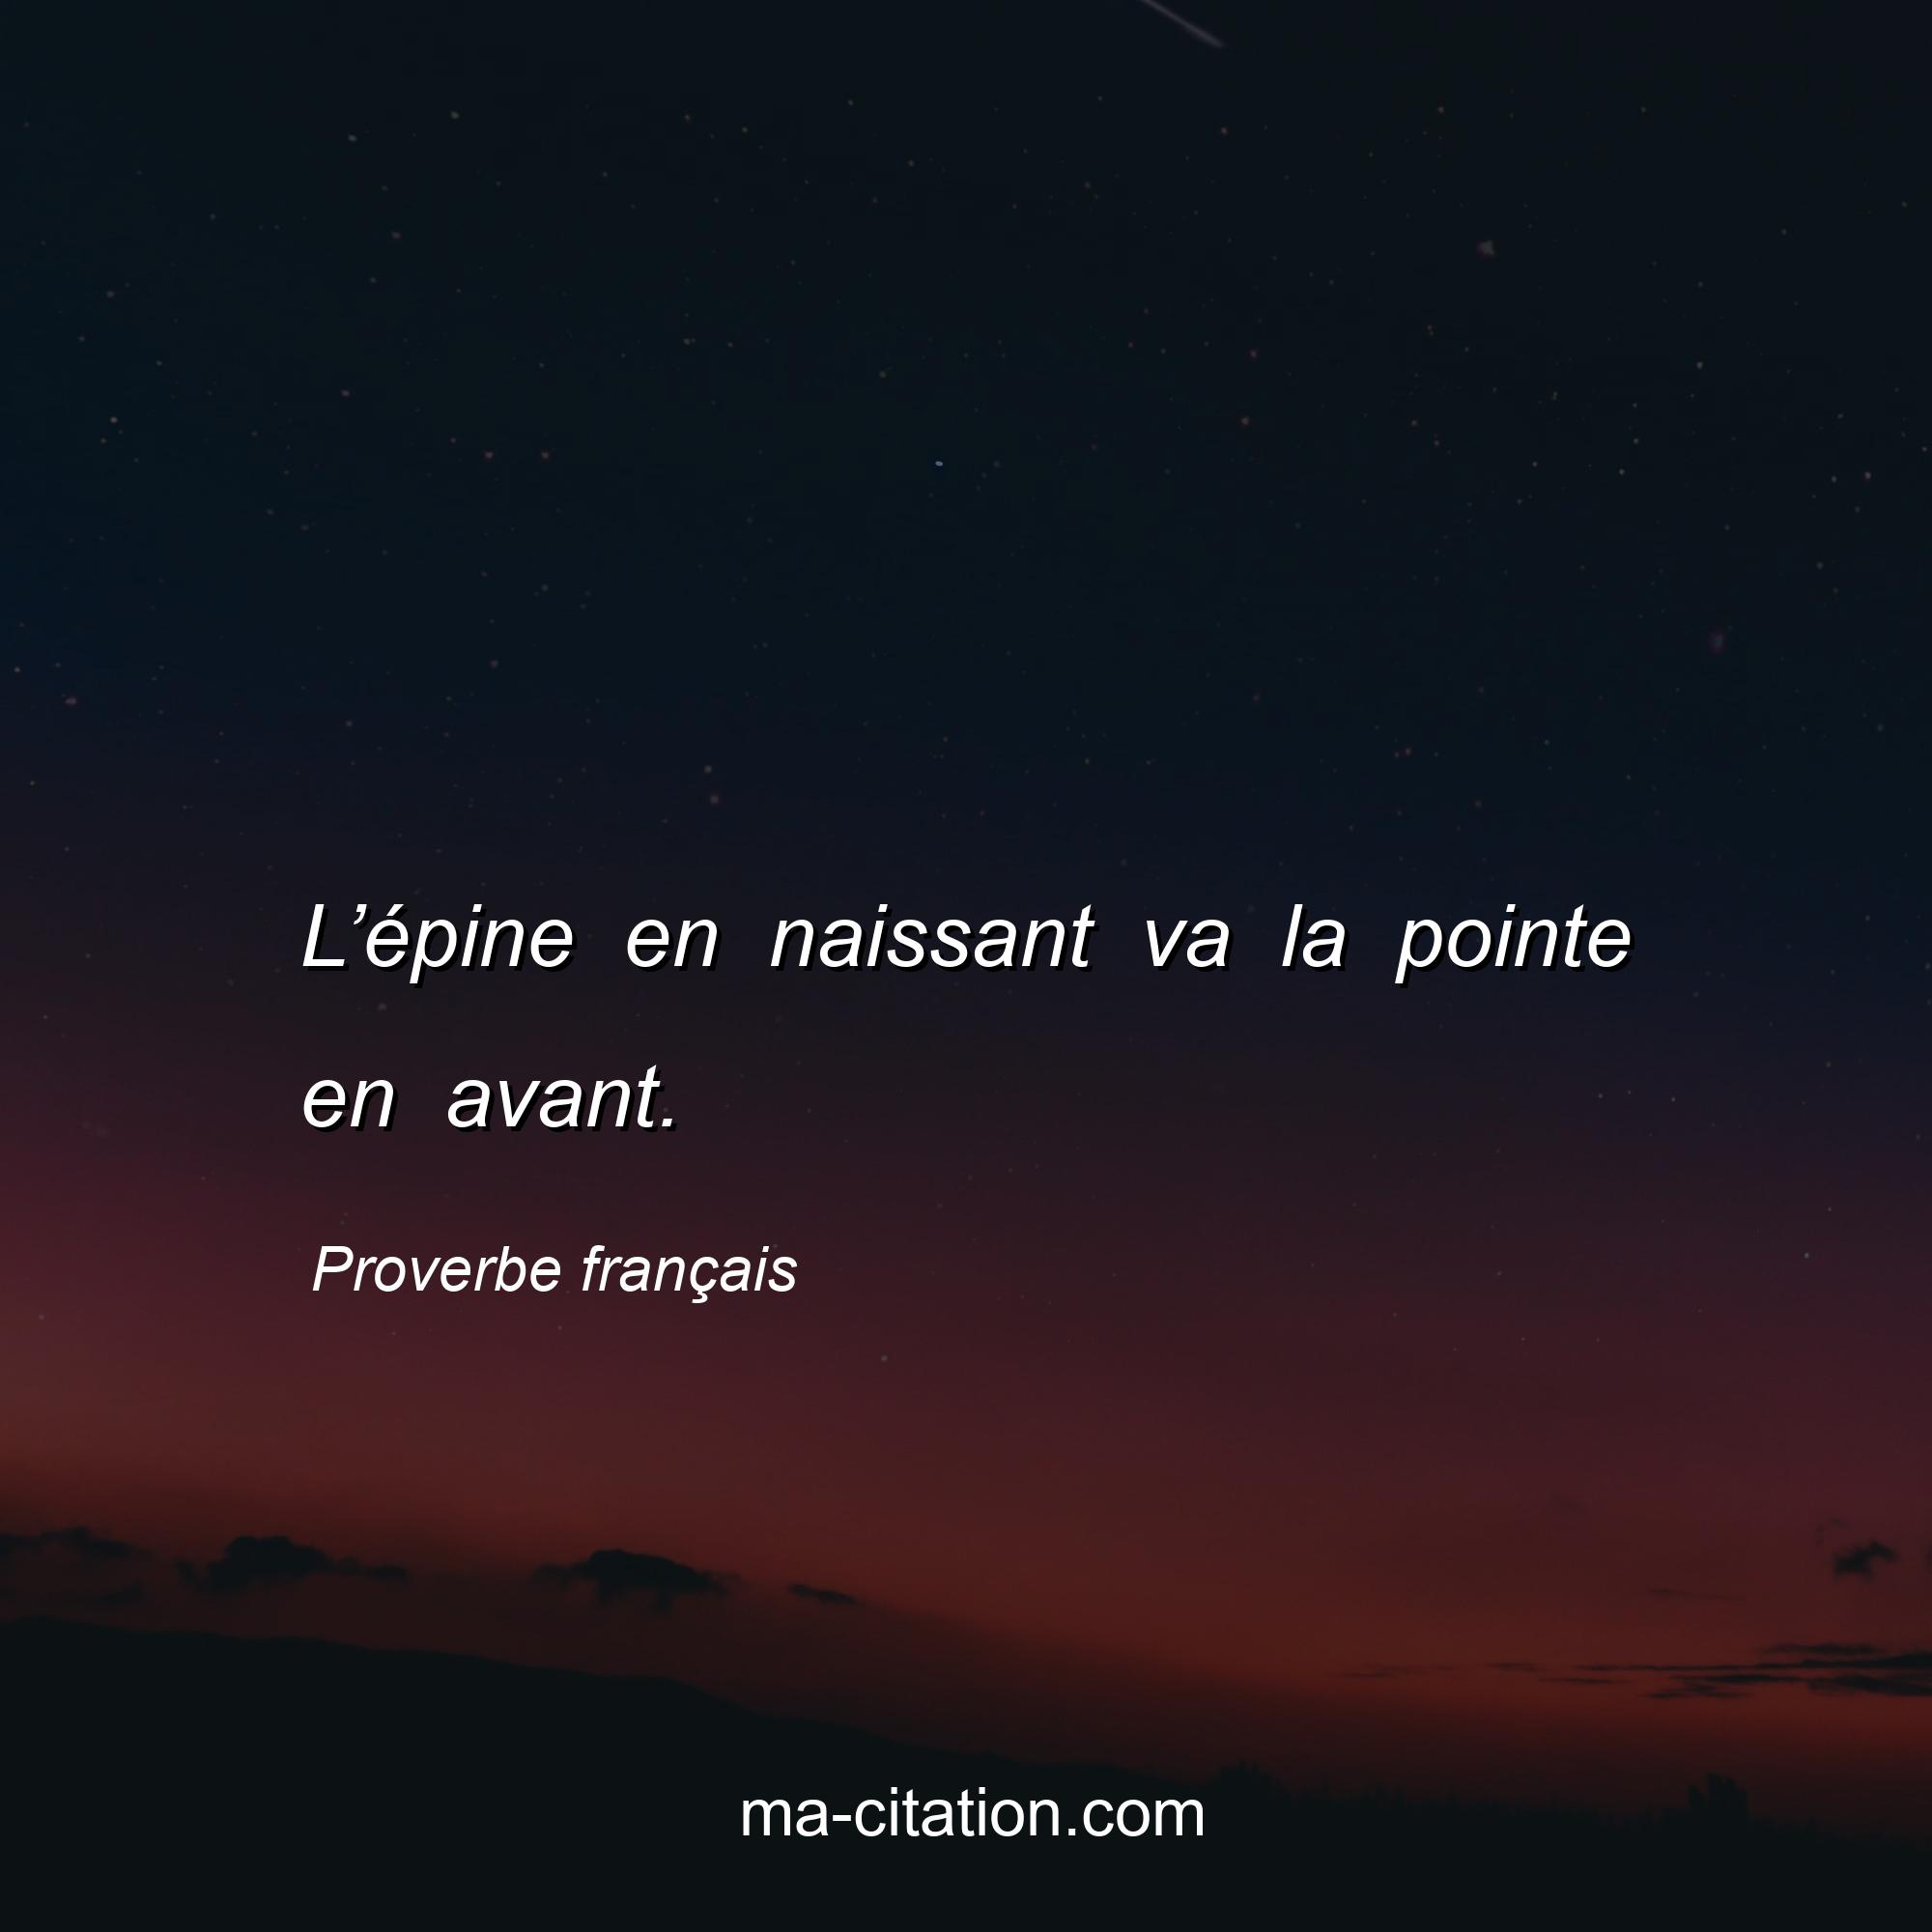 Proverbe français : L’épine en naissant va la pointe en avant.